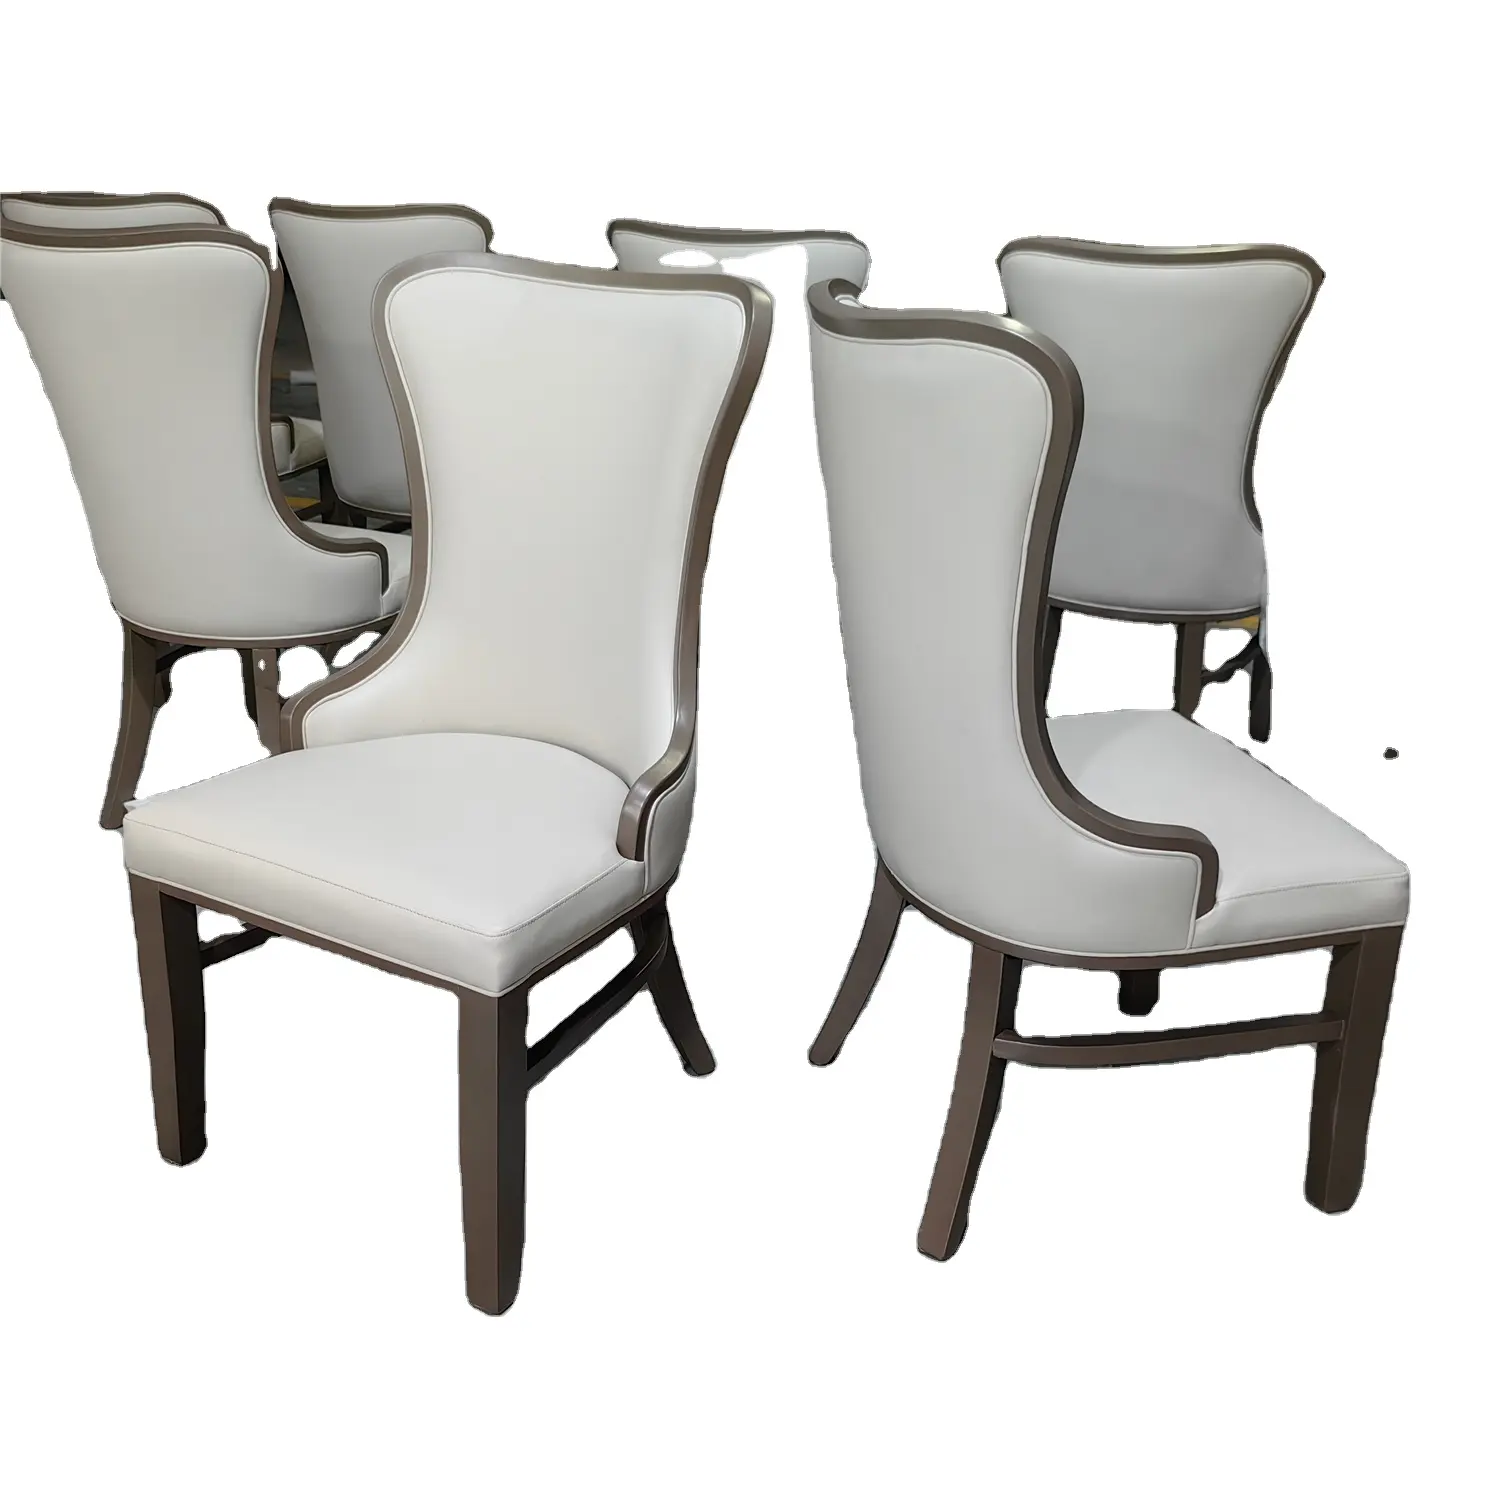 Sillas clásicas de madera para restaurante, juego de sillas de madera de diseño italiano para hotel, sillas de comedor con respaldo alto